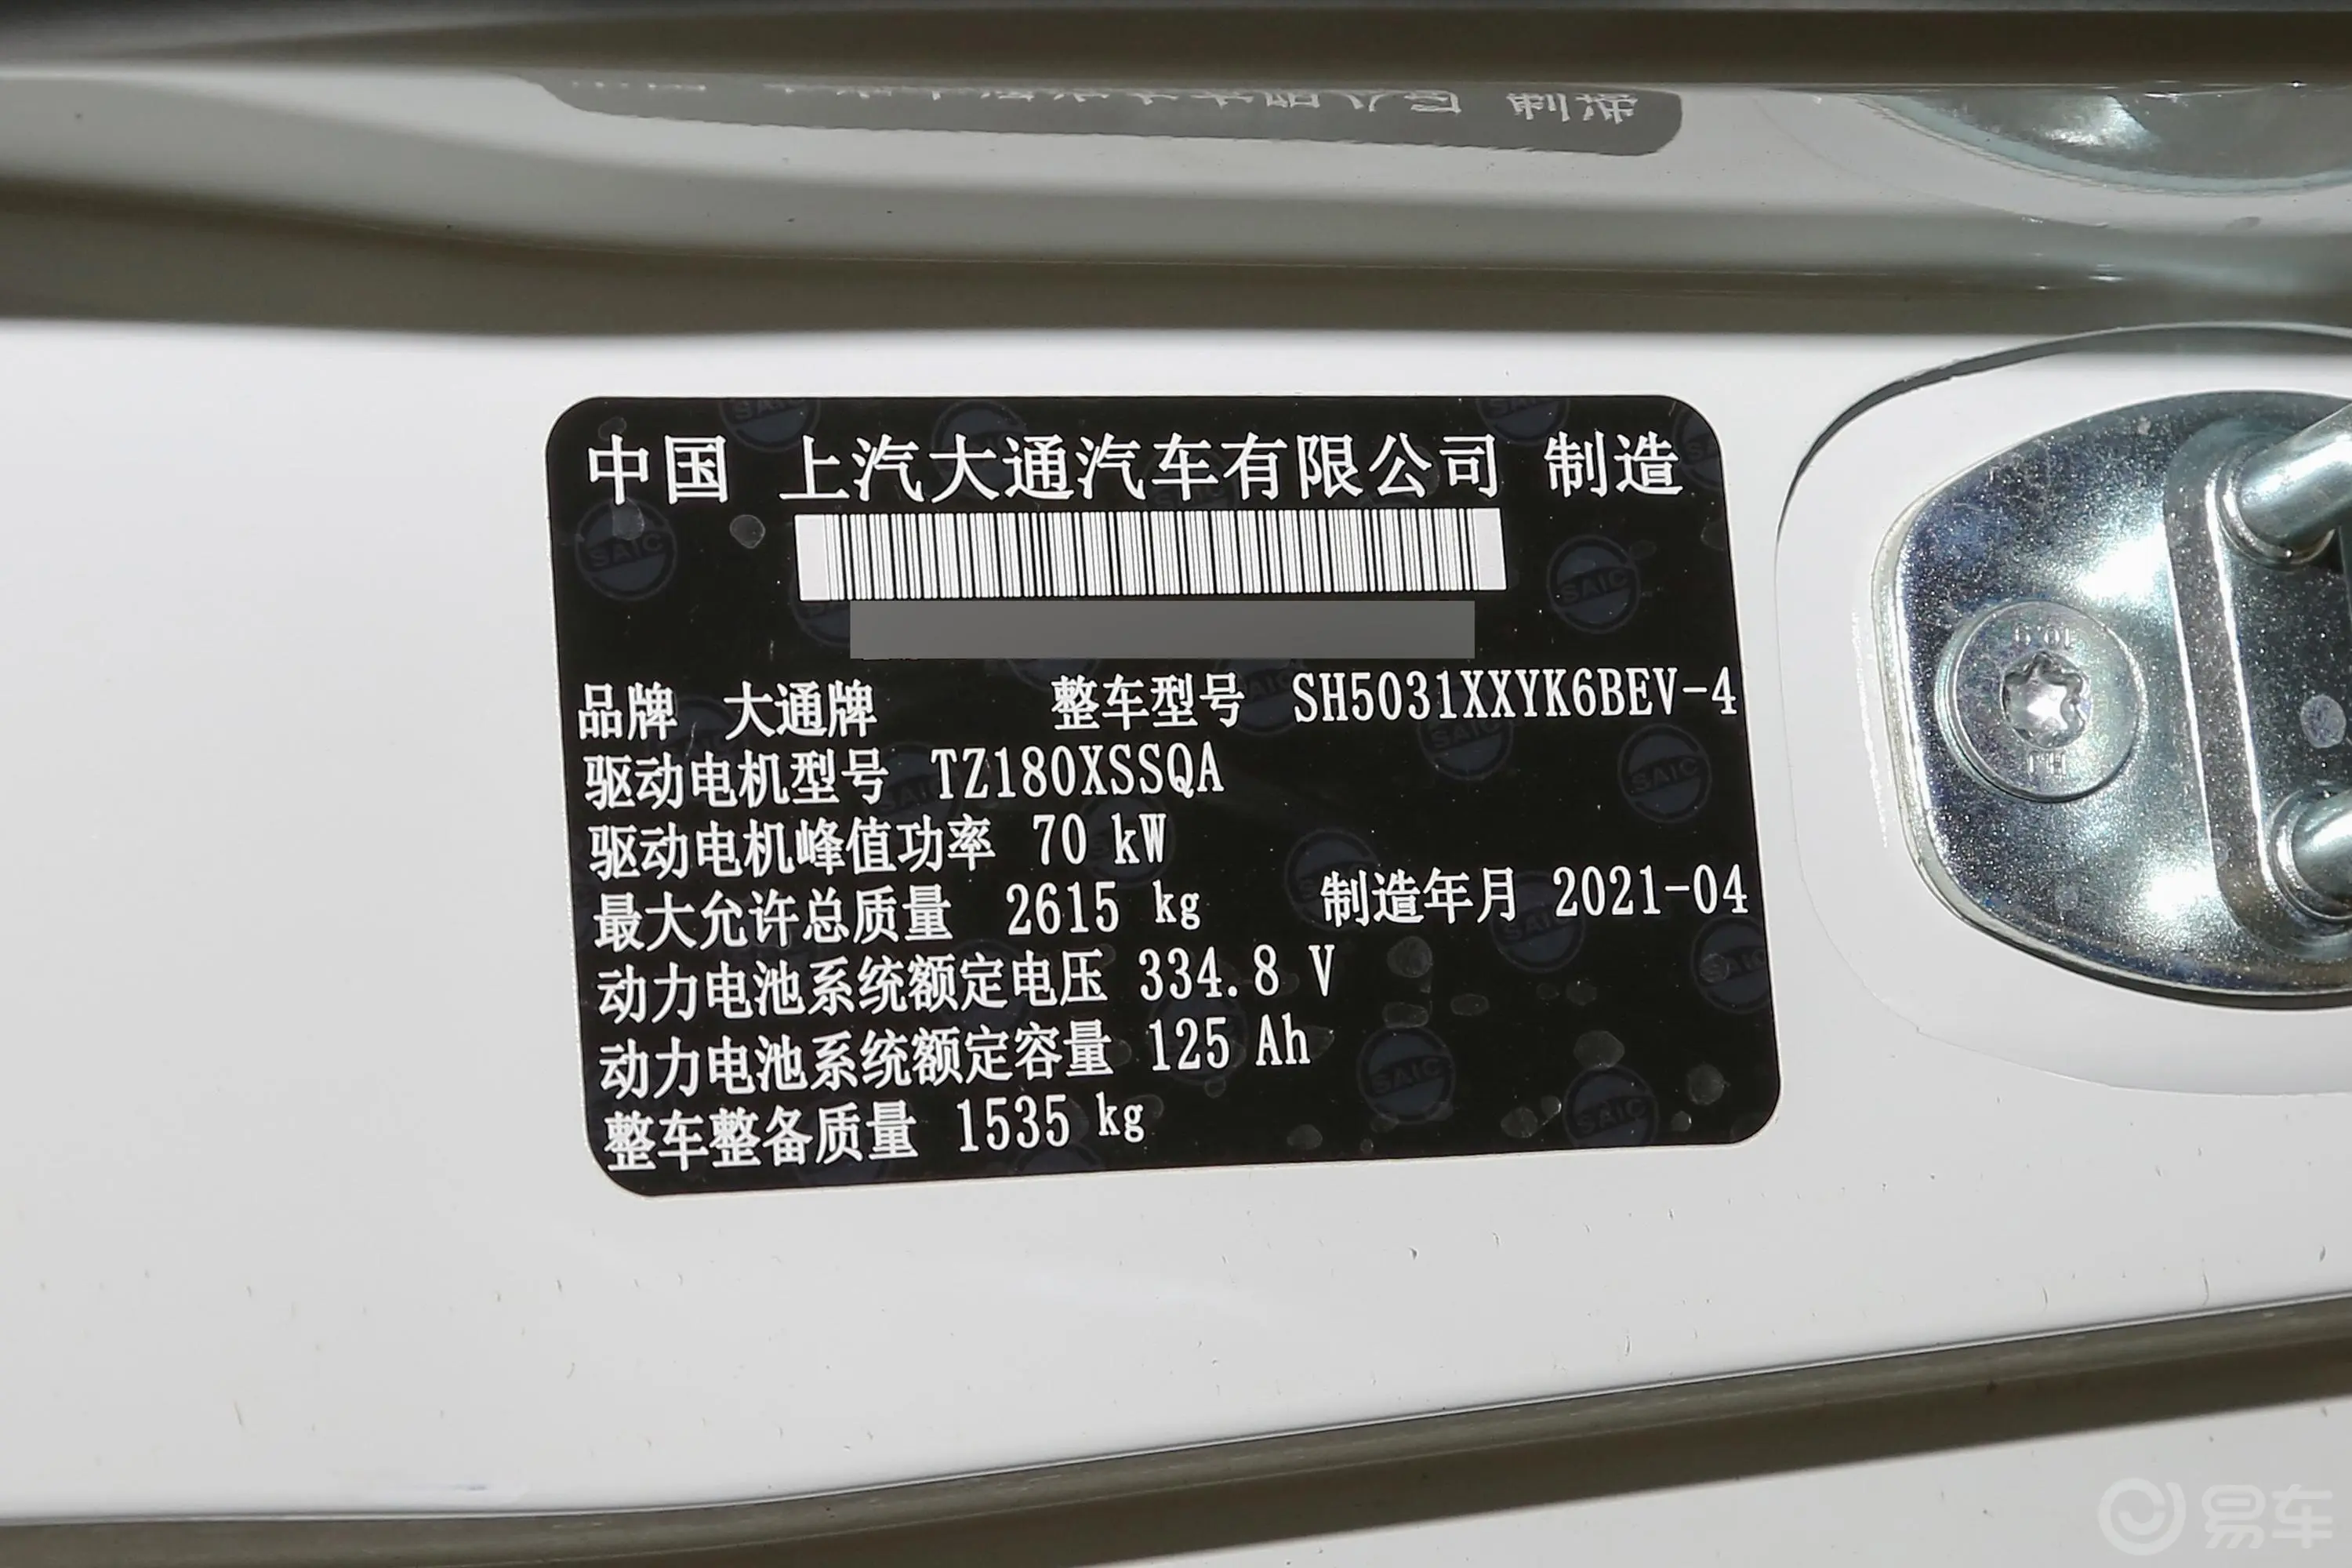 大通EV30303km 长轴标准版车辆信息铭牌